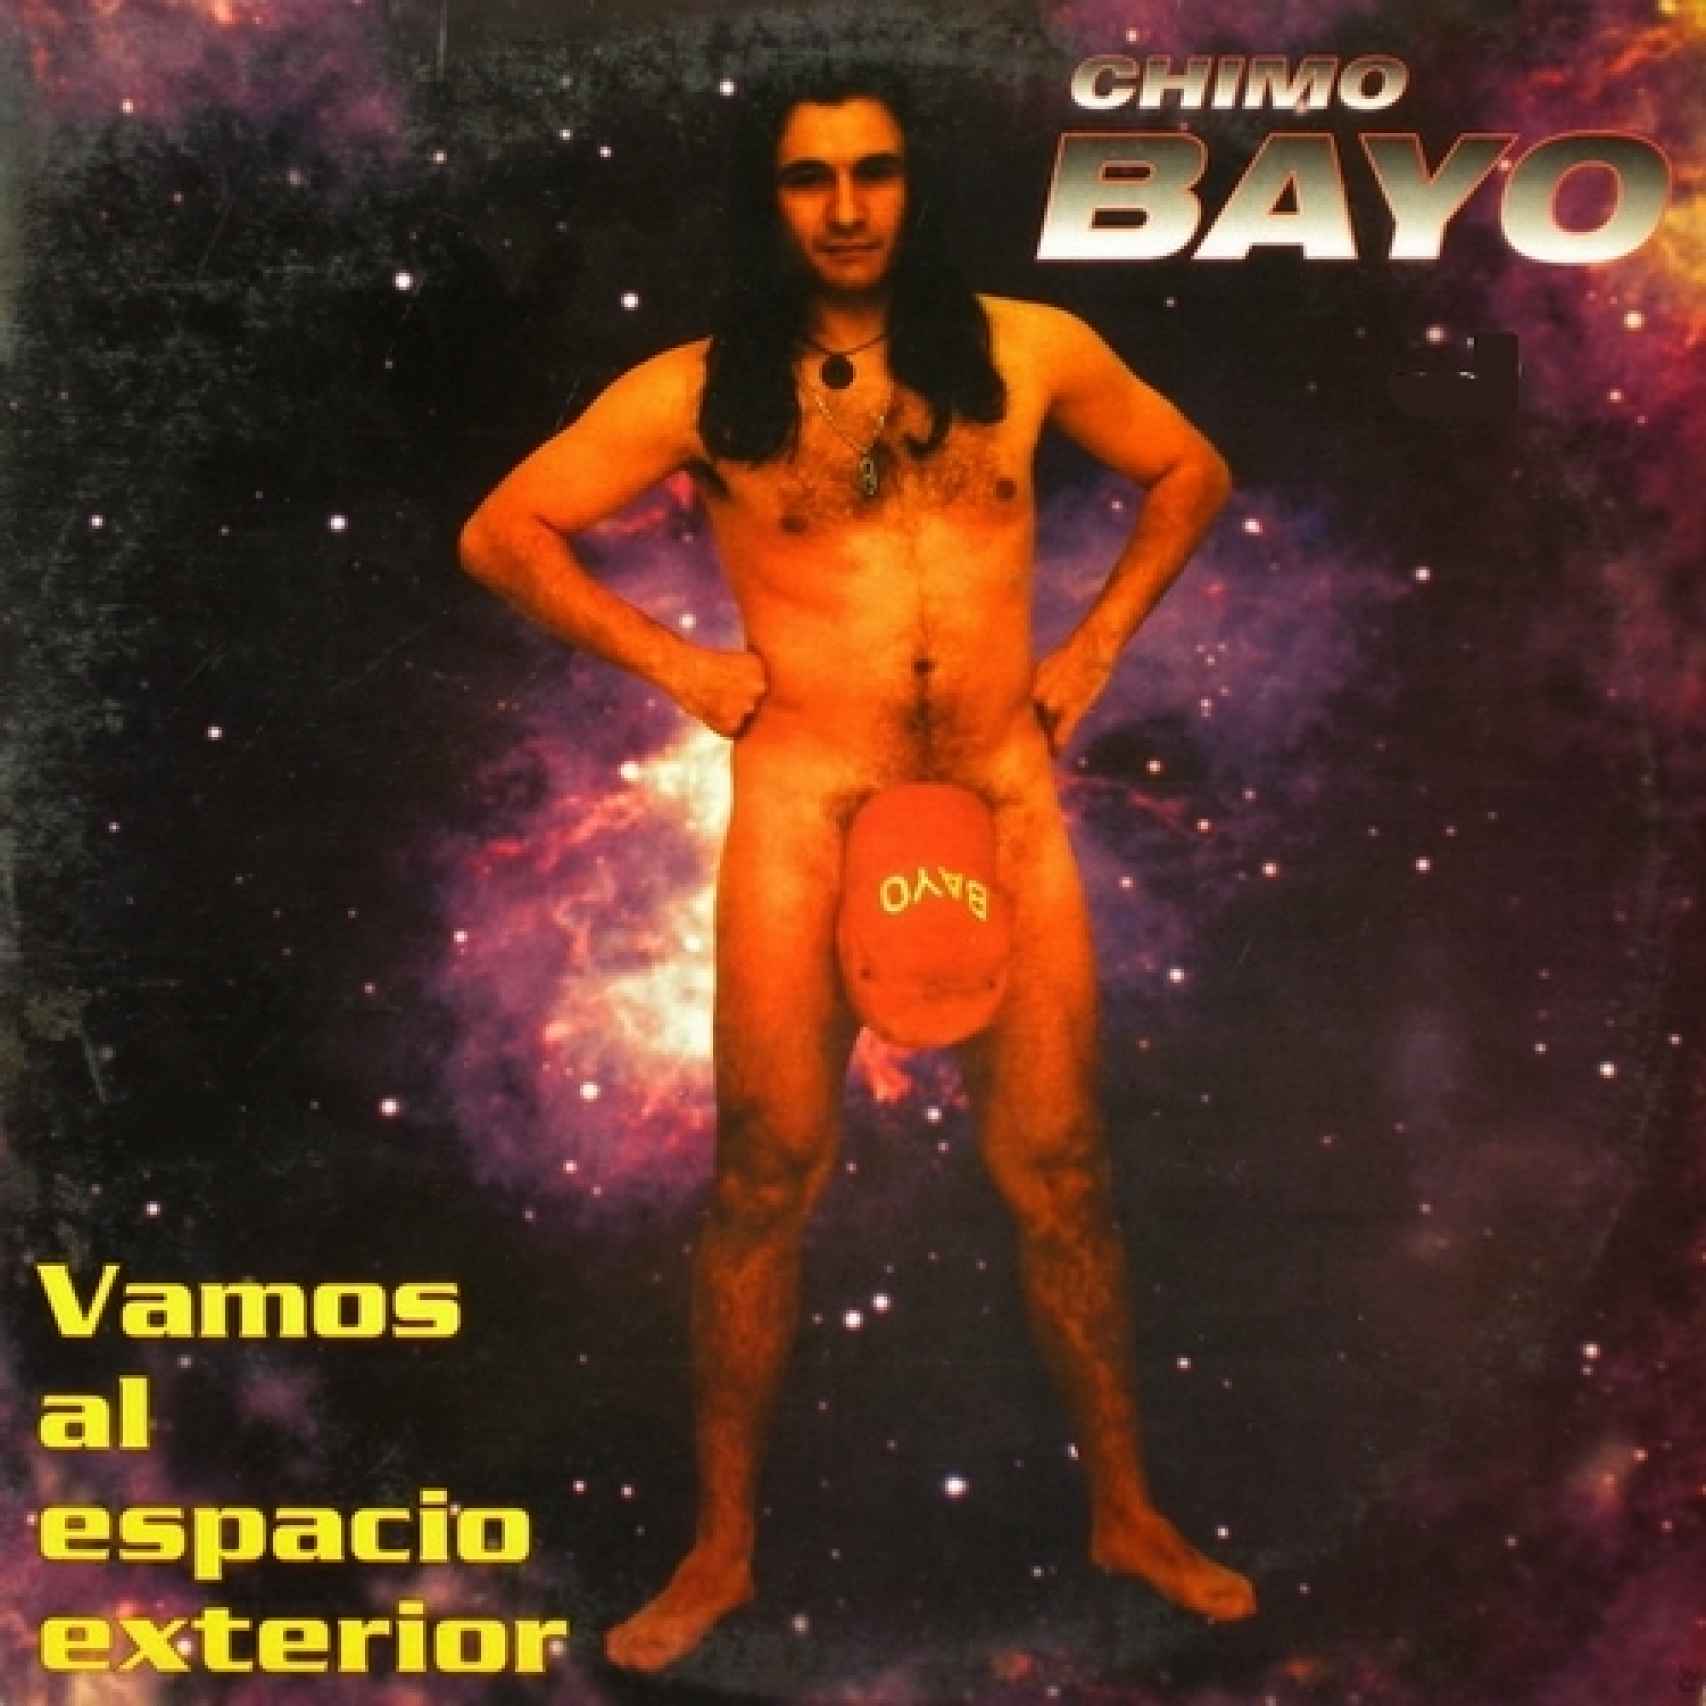 Portada del disco de Chimo Bayo Vamos al espacio exterior.